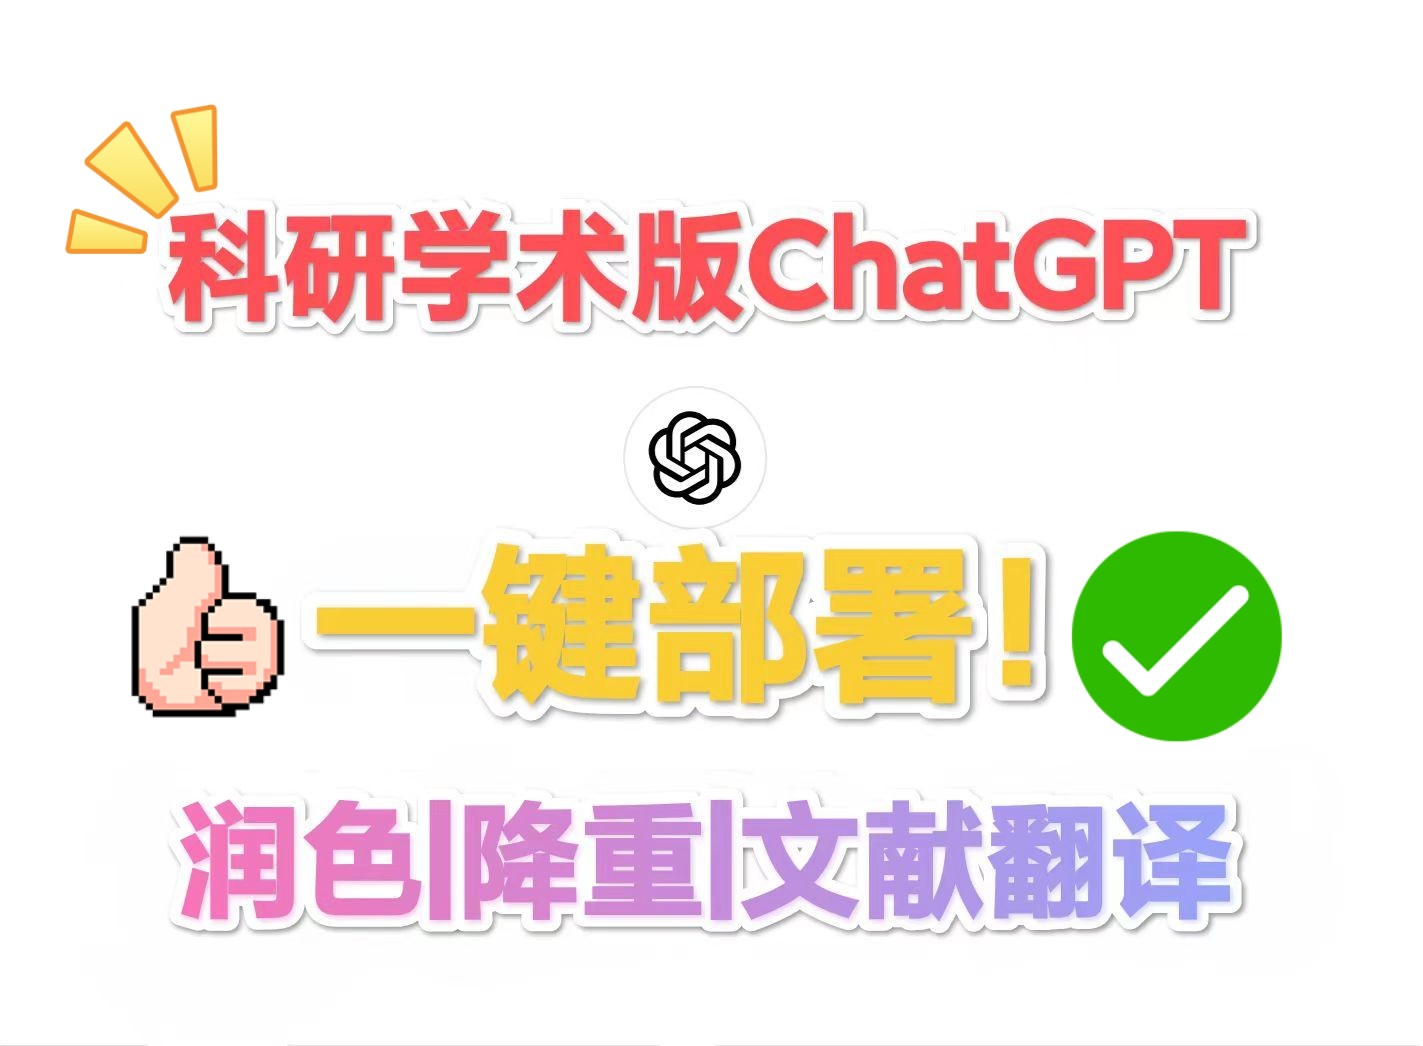 科研学术助手ChatGPT4.0插件一键免费部署！！轻松论文润色/论文降重/文献翻译/语法优化！